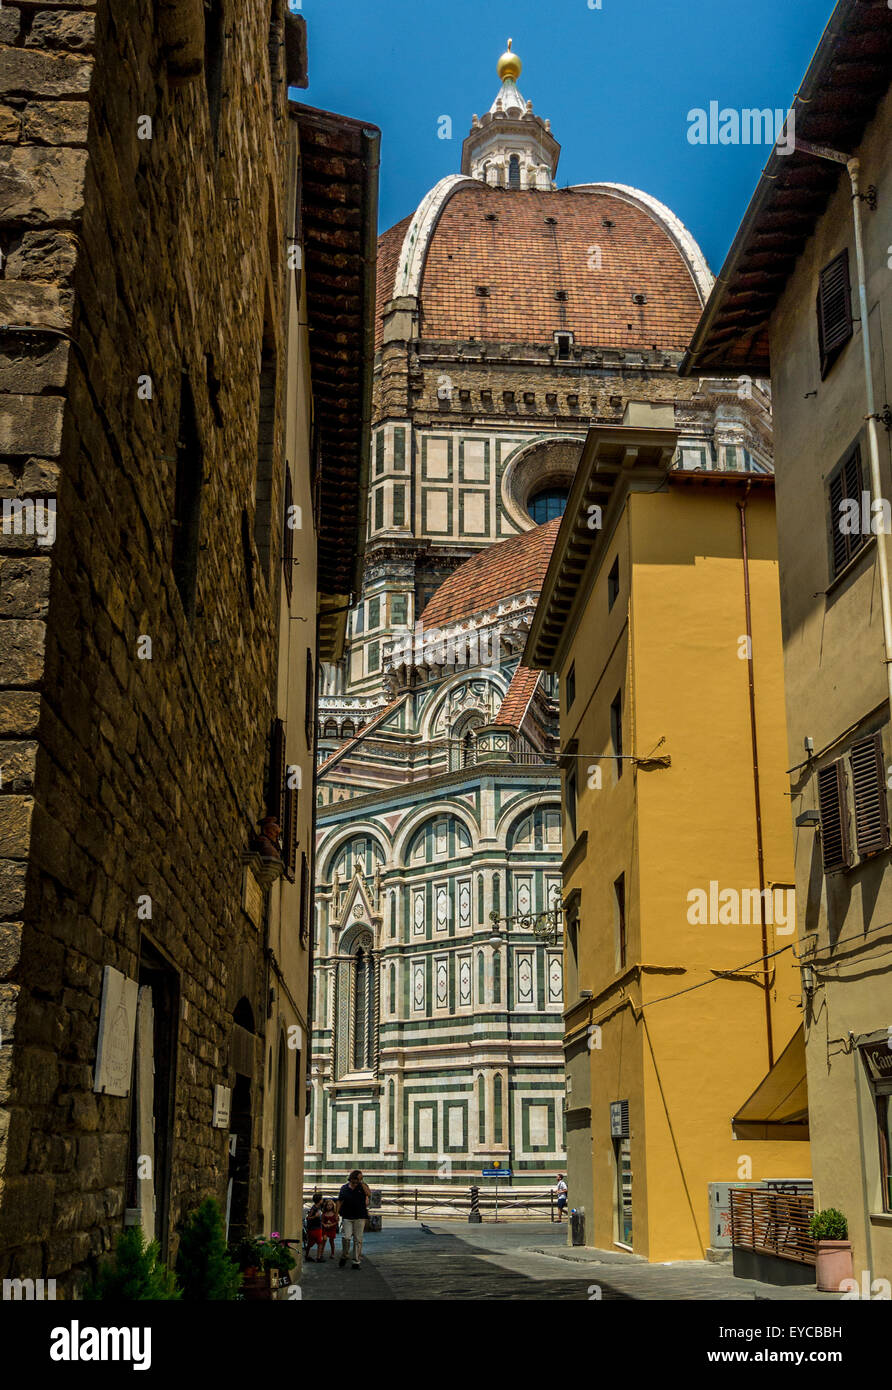 Florenz Kathedrale Blick zwischen Gebäuden in der Stadt Florenz, Italien. Stockfoto